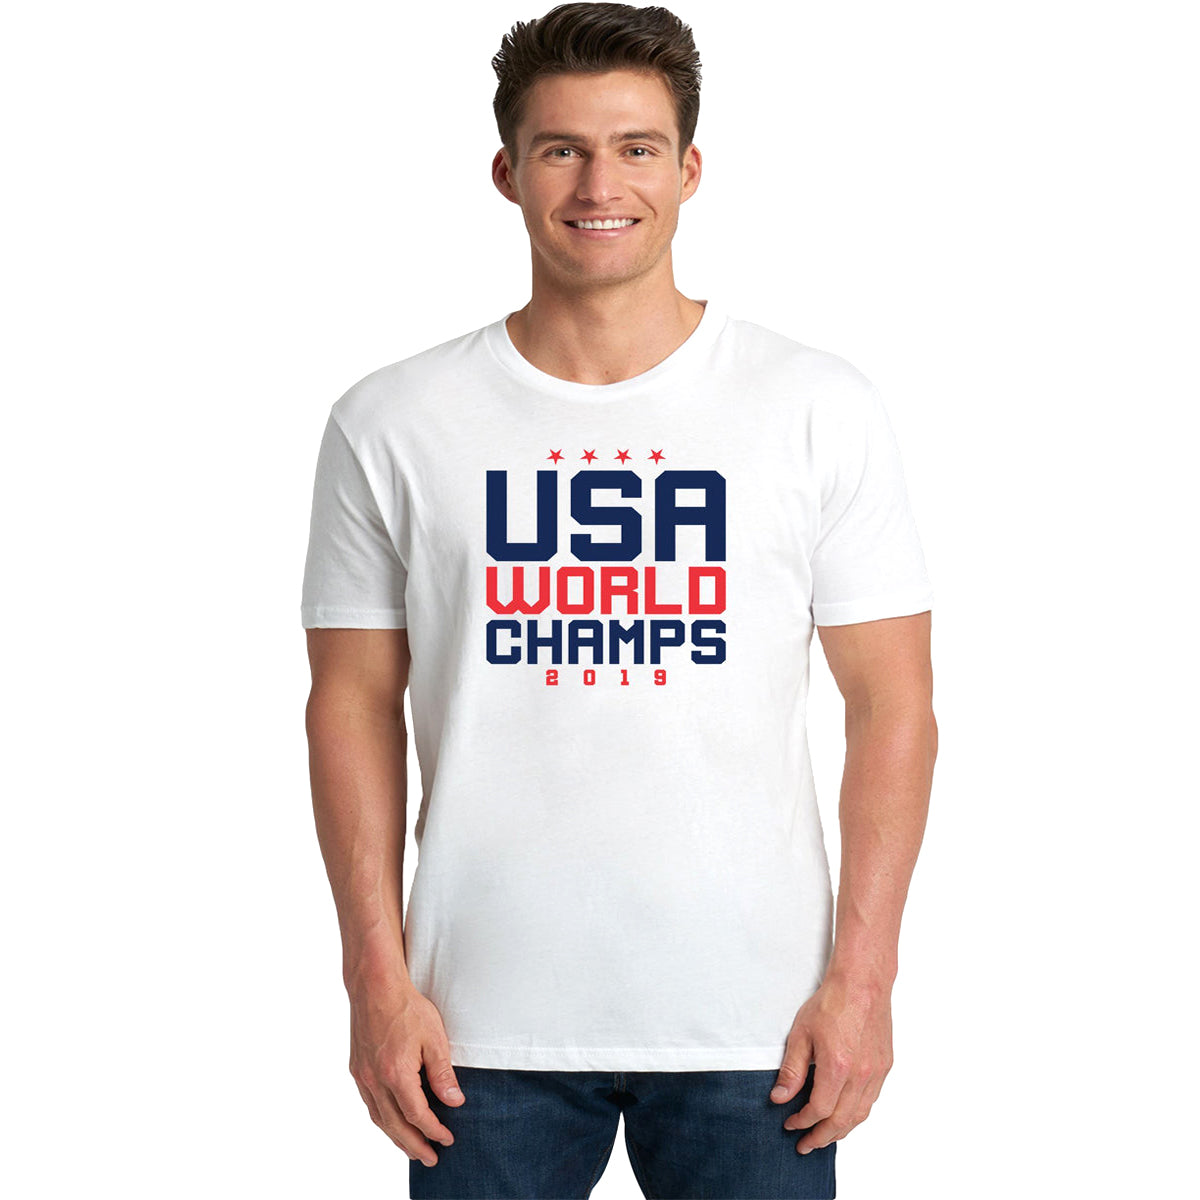 USA World Champions Shirt T-shirts 411 Youth Medium White Youth